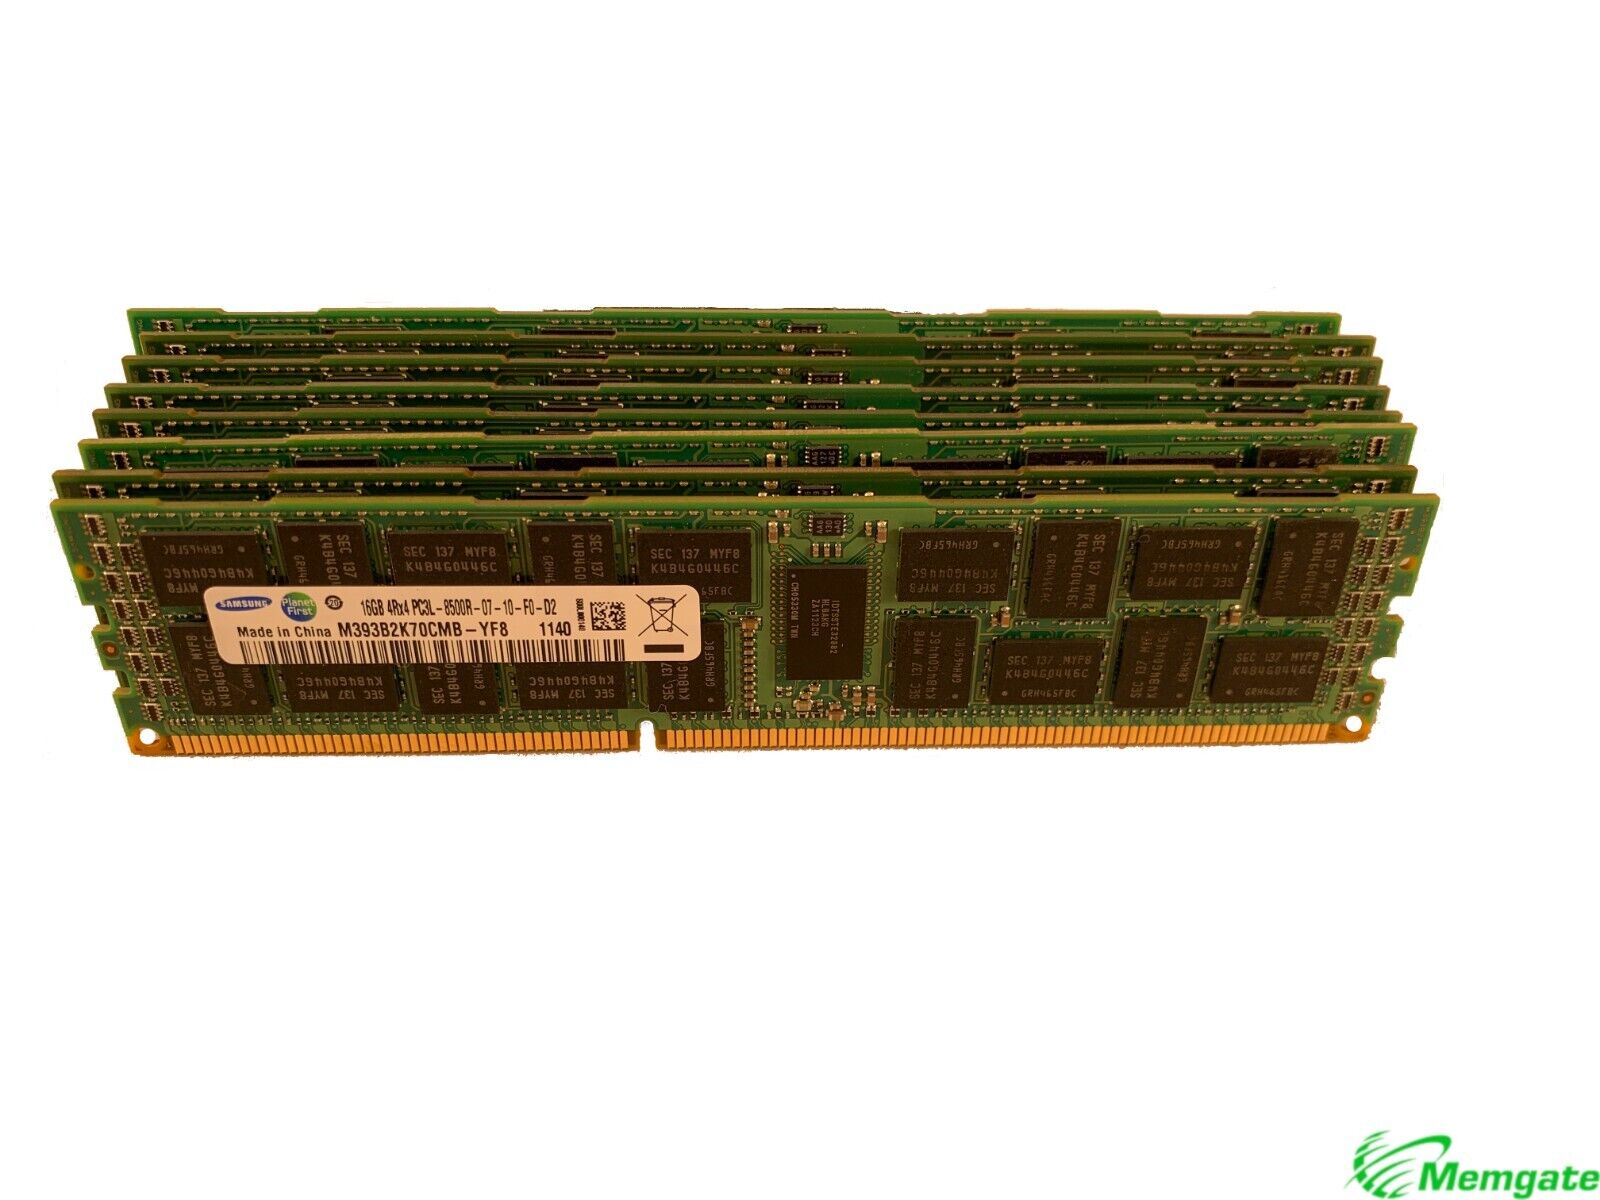   512GB (32x16GB) DDR3 PC3-8500R 4Rx4 ECC Server Memory RAM Dell PowerEdge R810